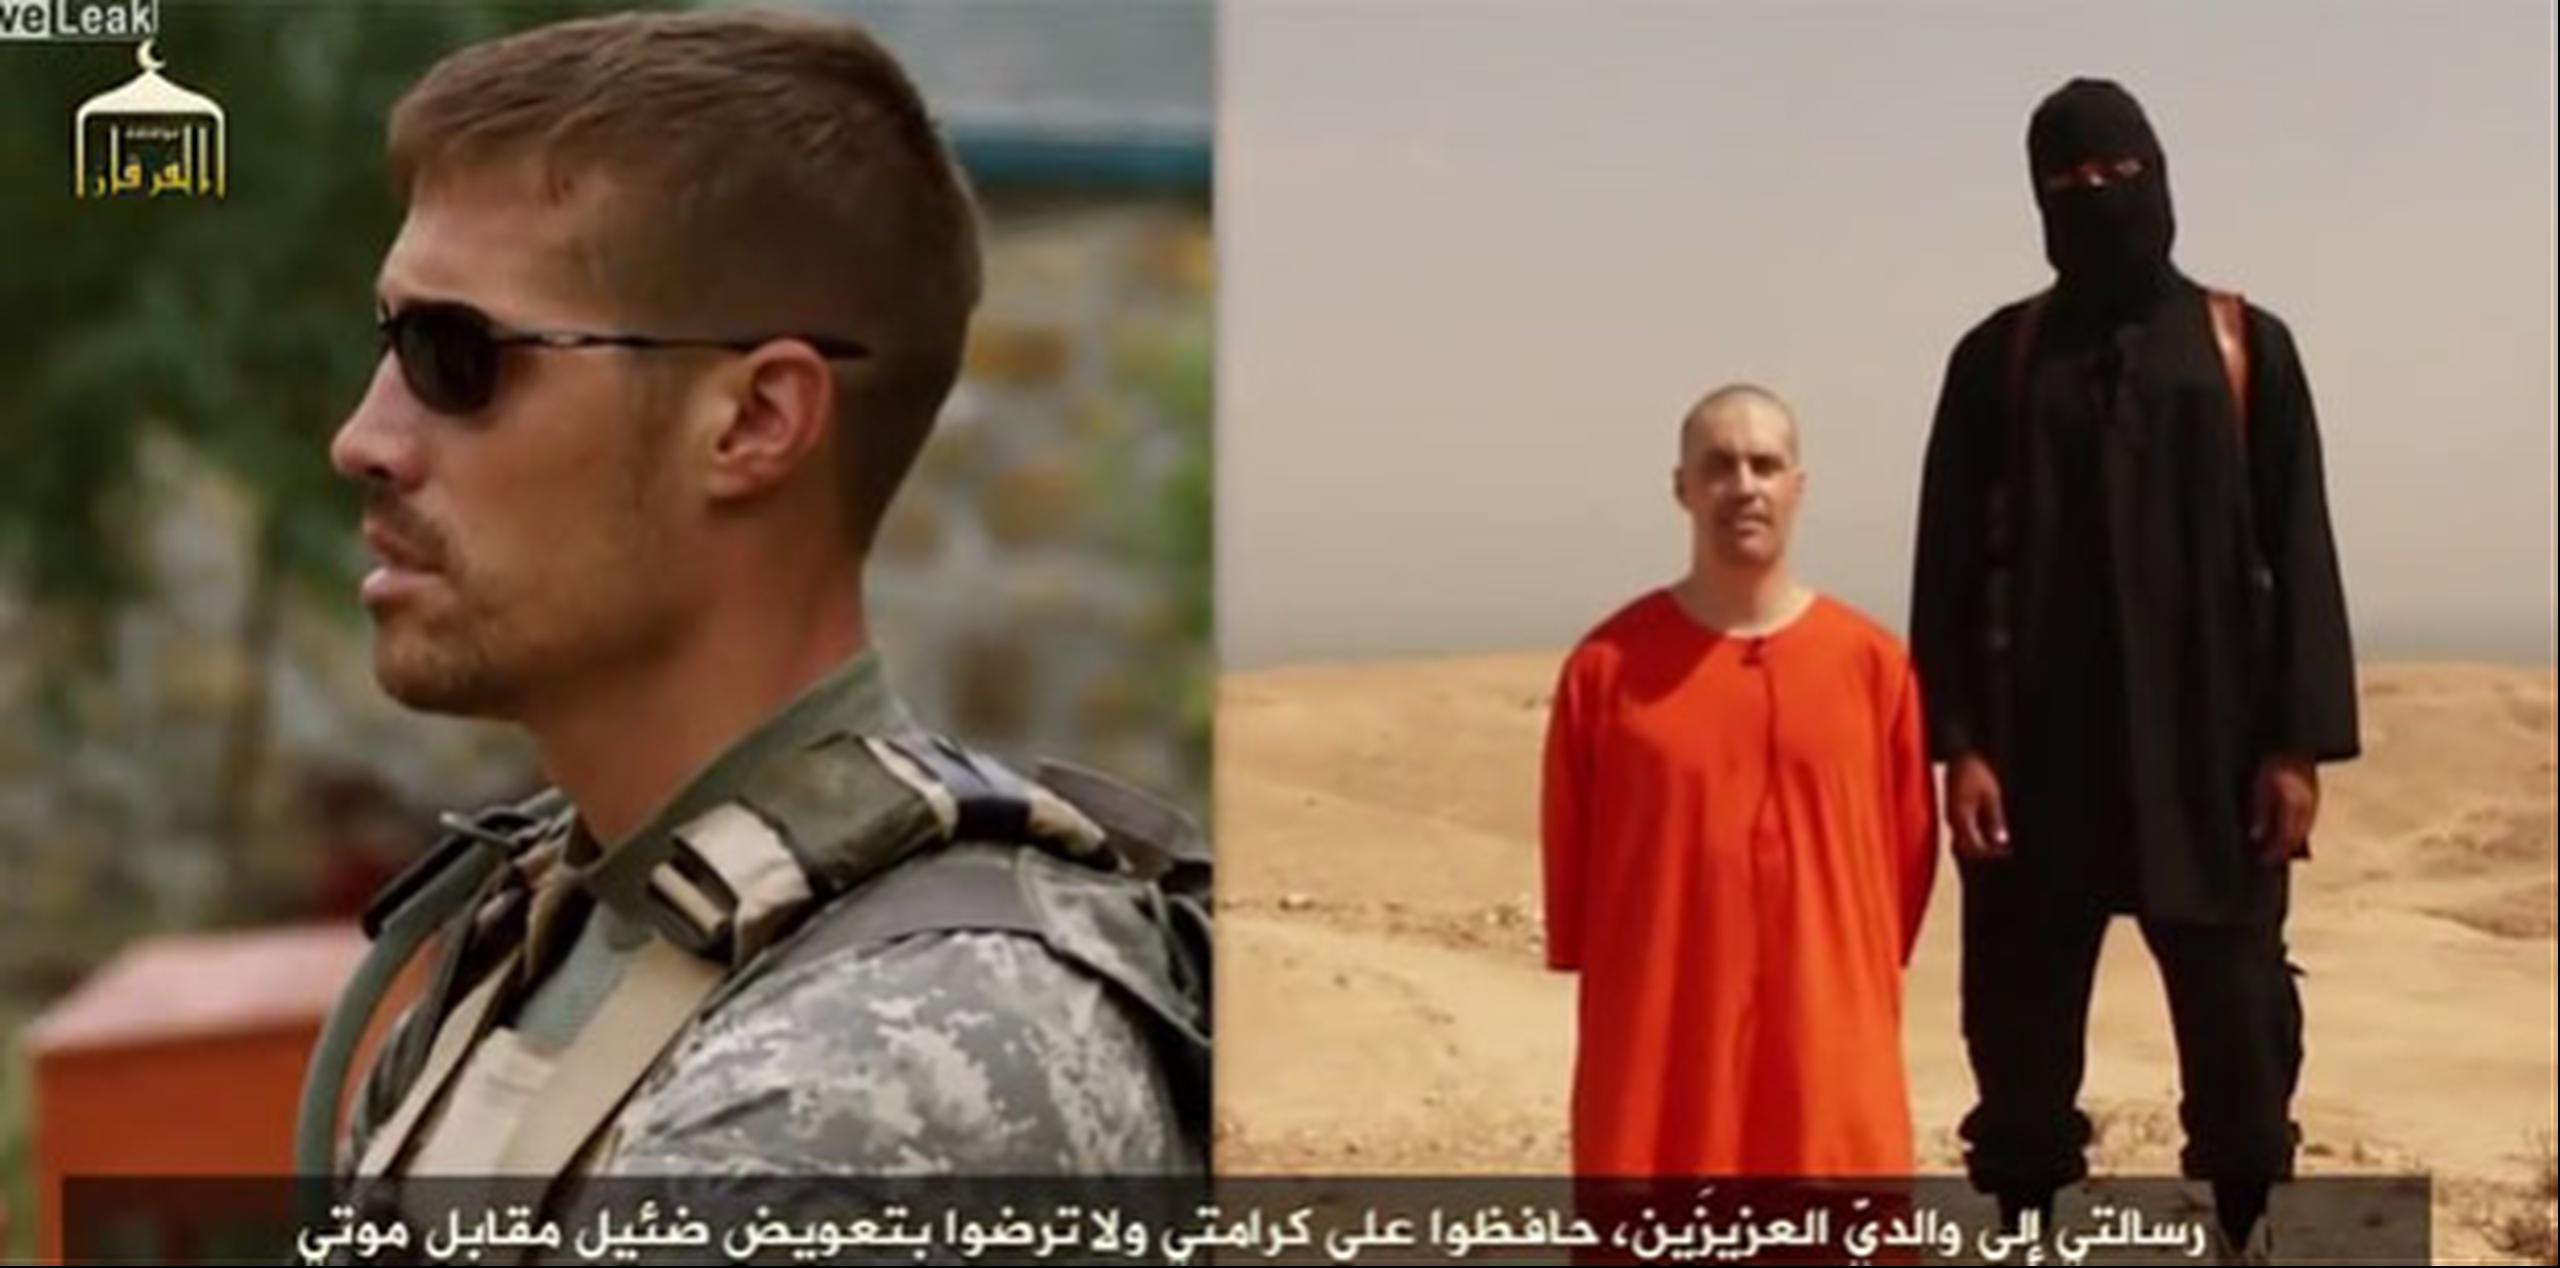 El periodista estadounidense identificado como James Wright Foley fue secuestrado en Siria en noviembre de 2012. (Youtube)